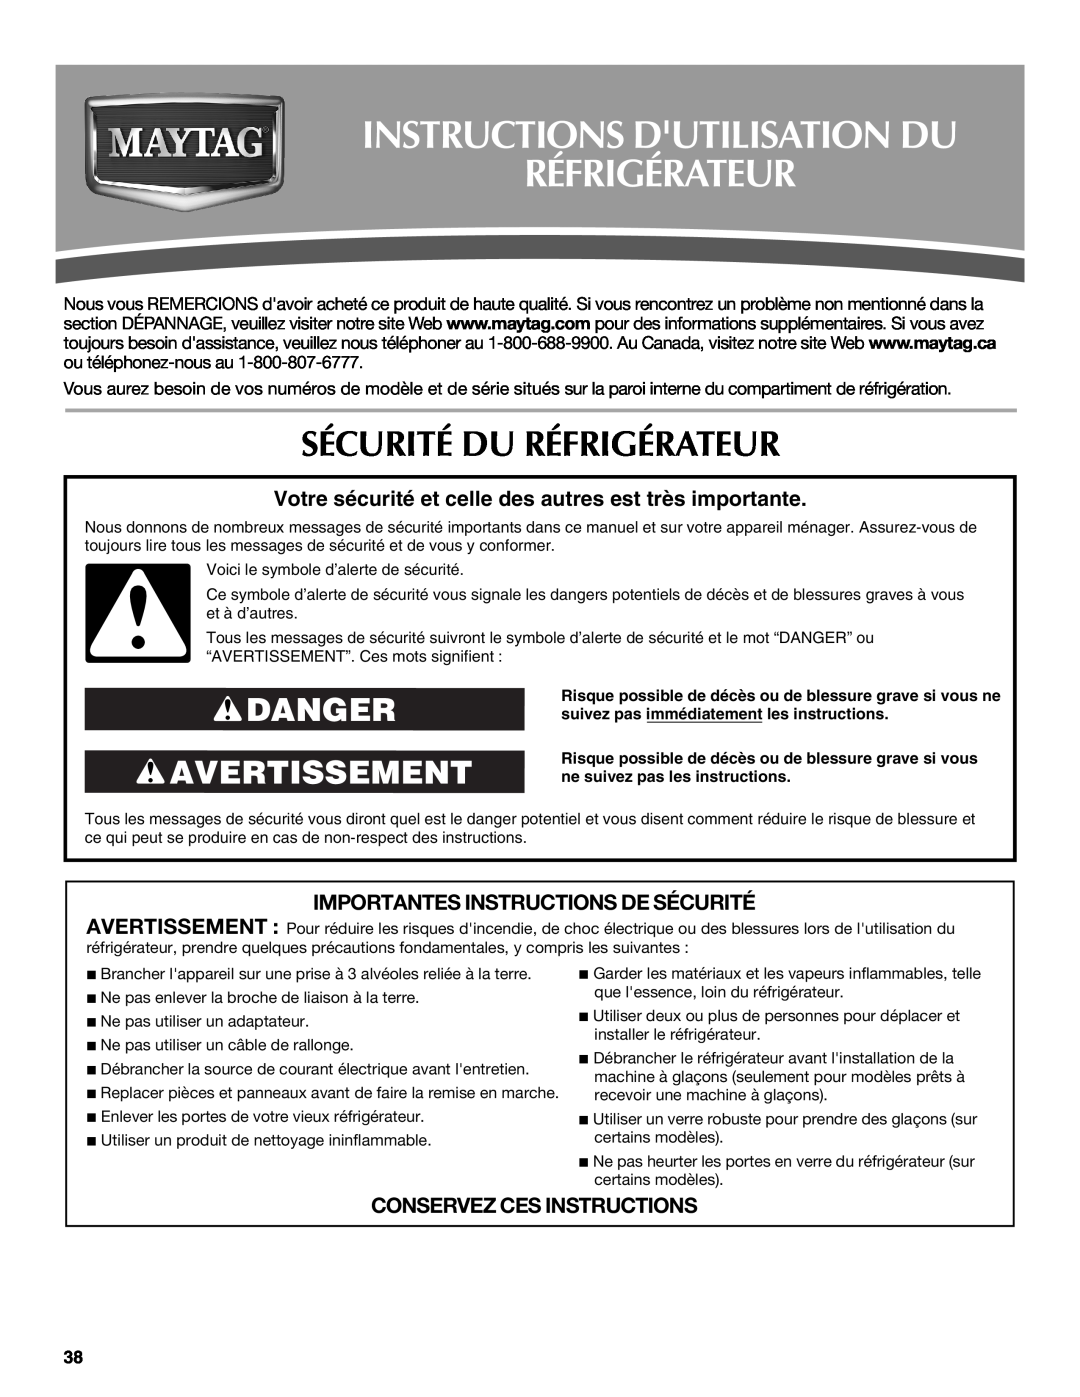 Maytag MFI2269VEM Instructions Dutilisation Du Réfrigérateur, Sécurité Du Réfrigérateur, Danger Avertissement 